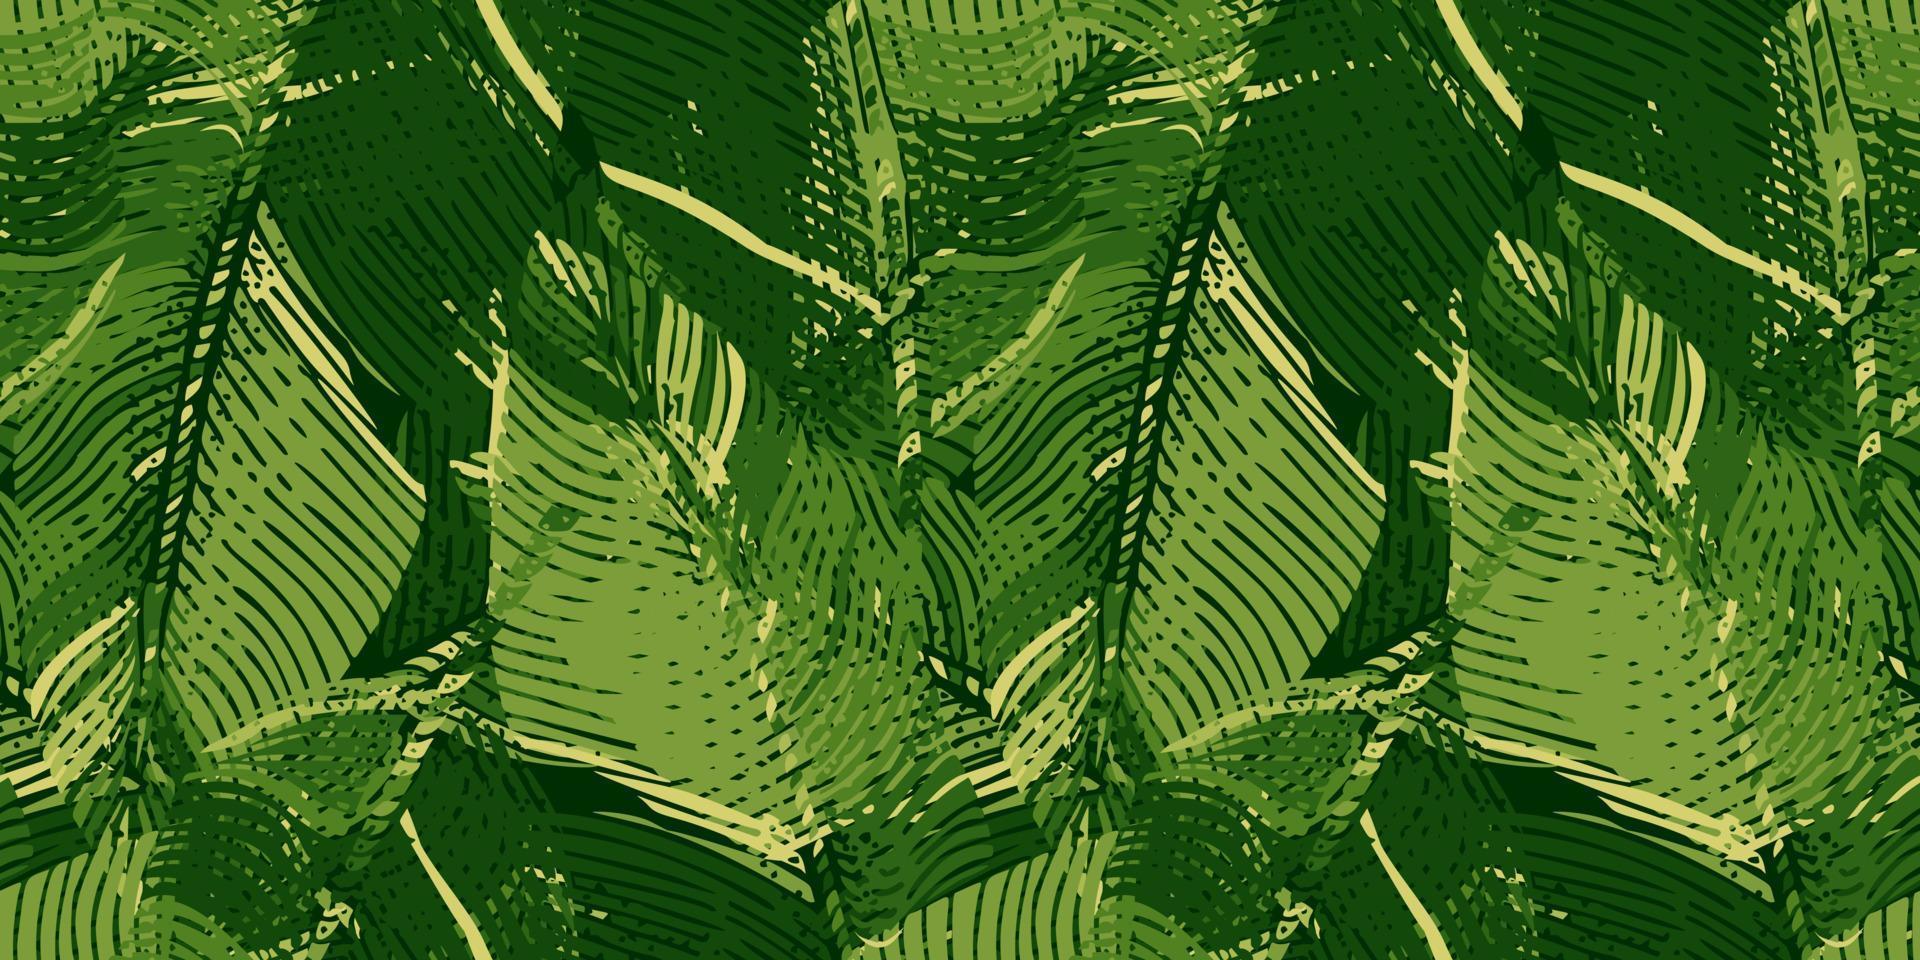 padrão sem emenda de folha de bananeira abstrata. gravura de fundo botânico de camuflagem. vetor